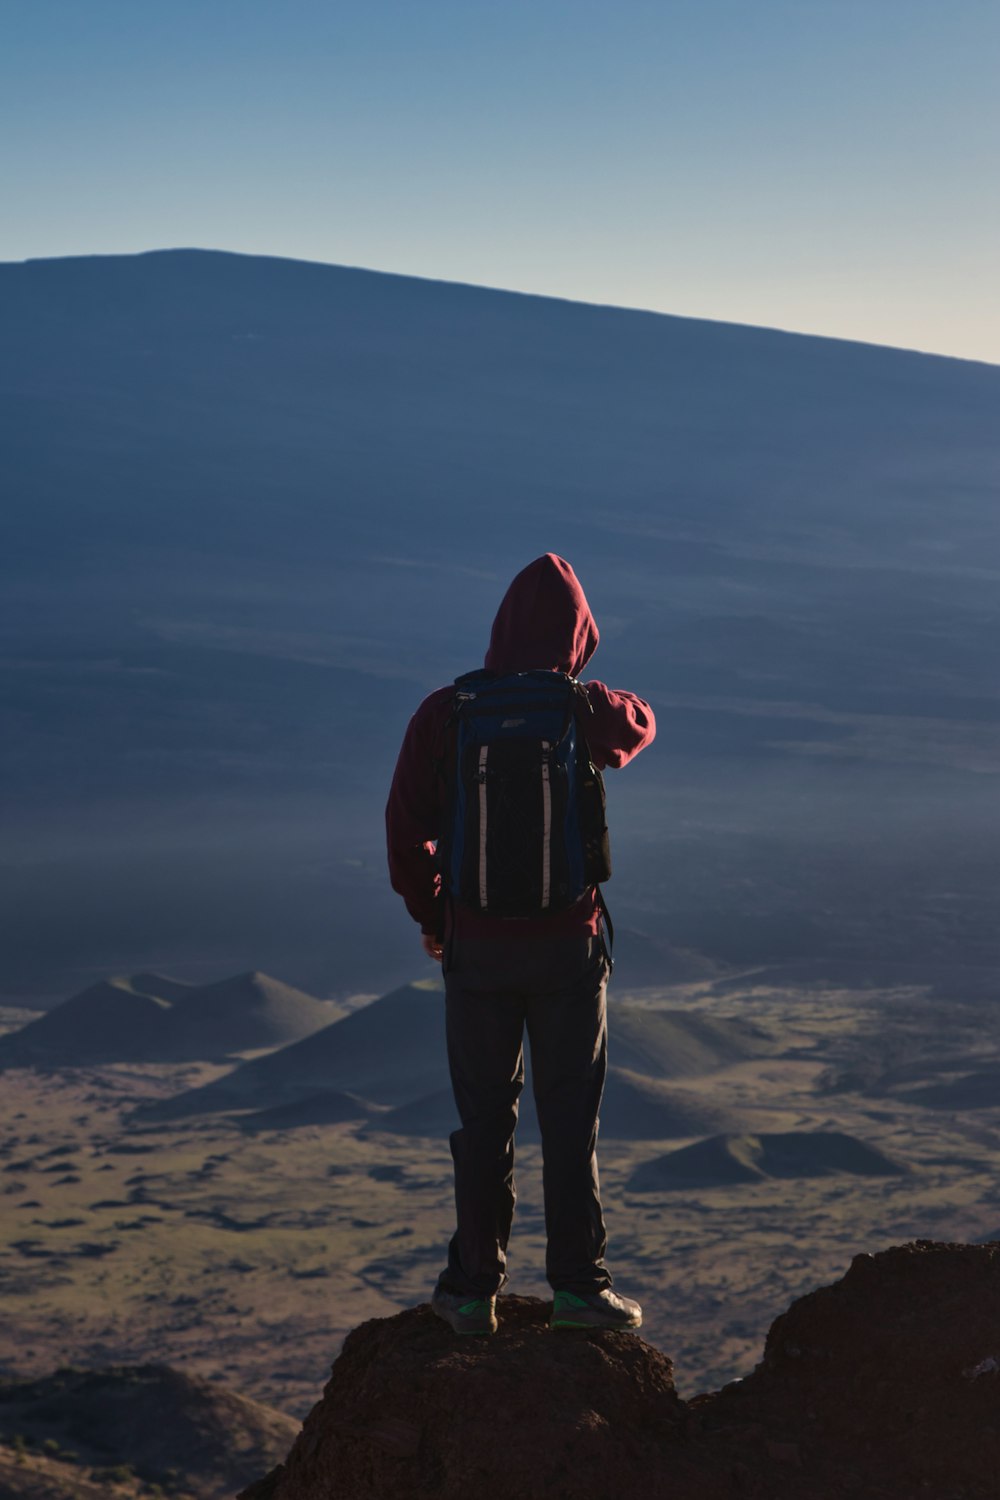 una persona parada en la cima de una montaña con una mochila